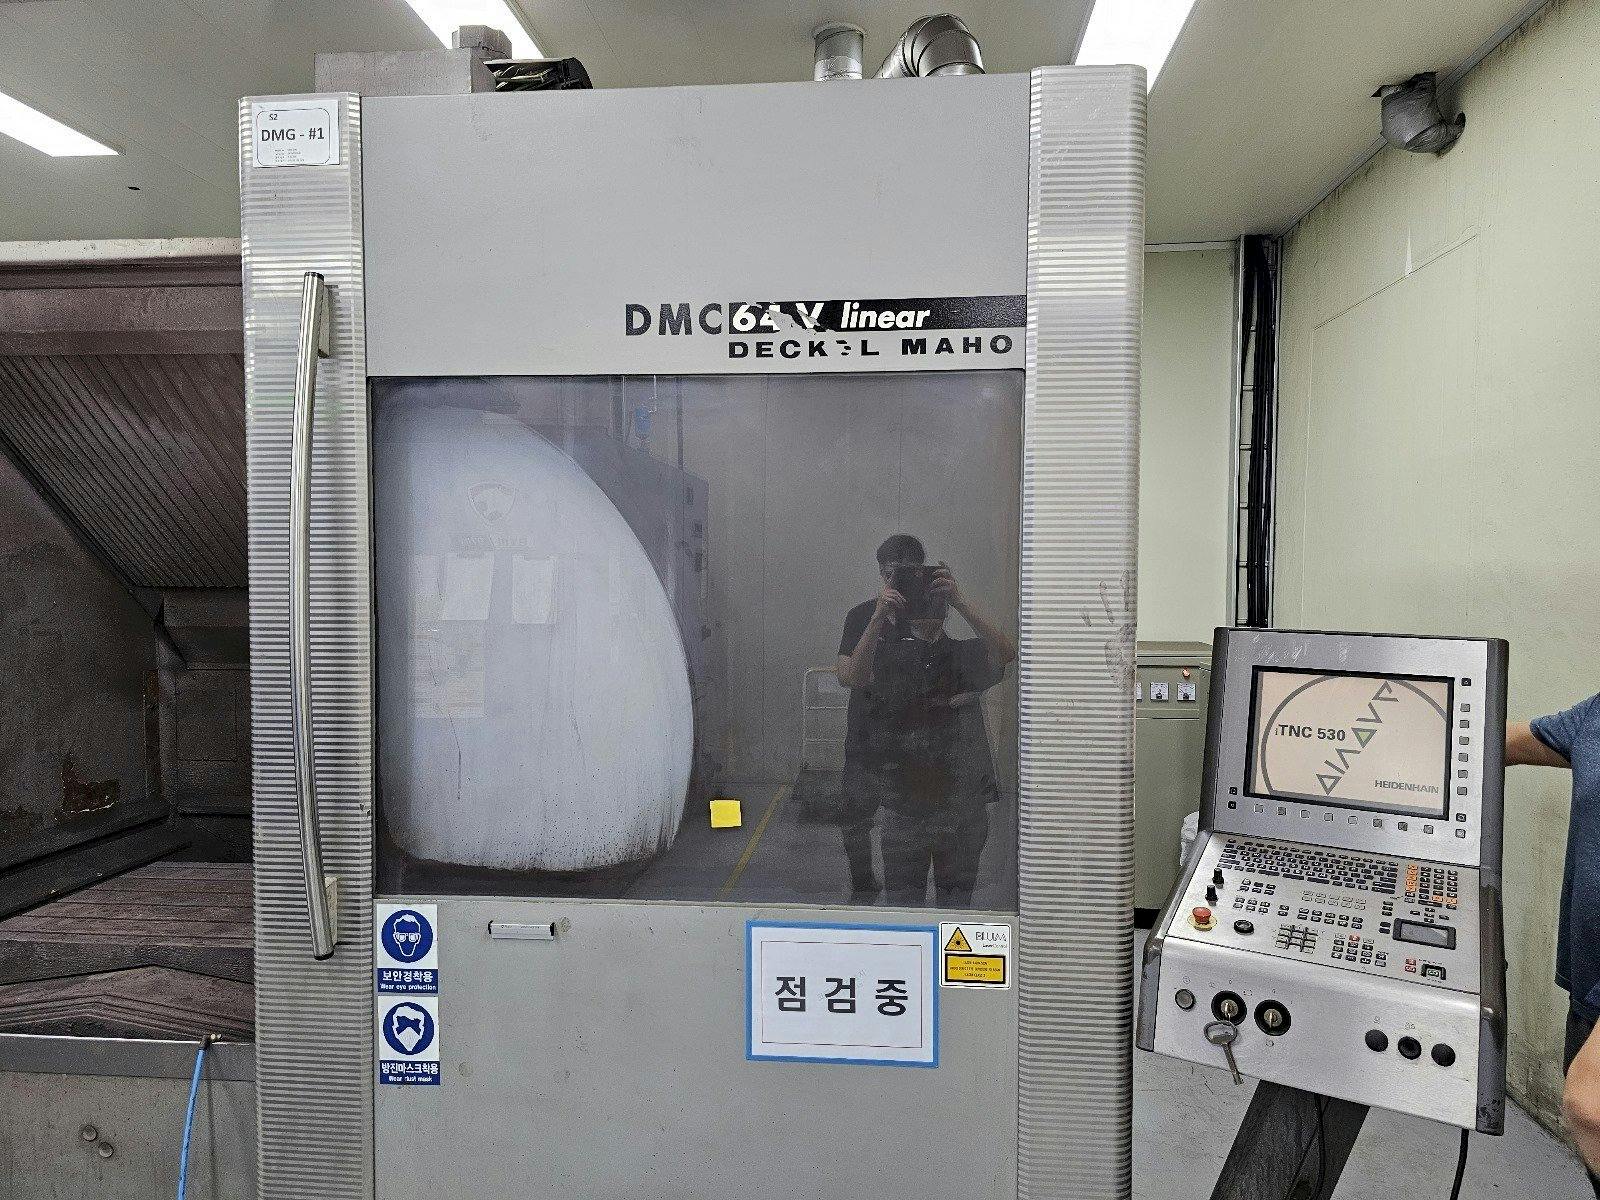 Vista Frontal  da DECKEL MAHO DMC 64V linear  máquina